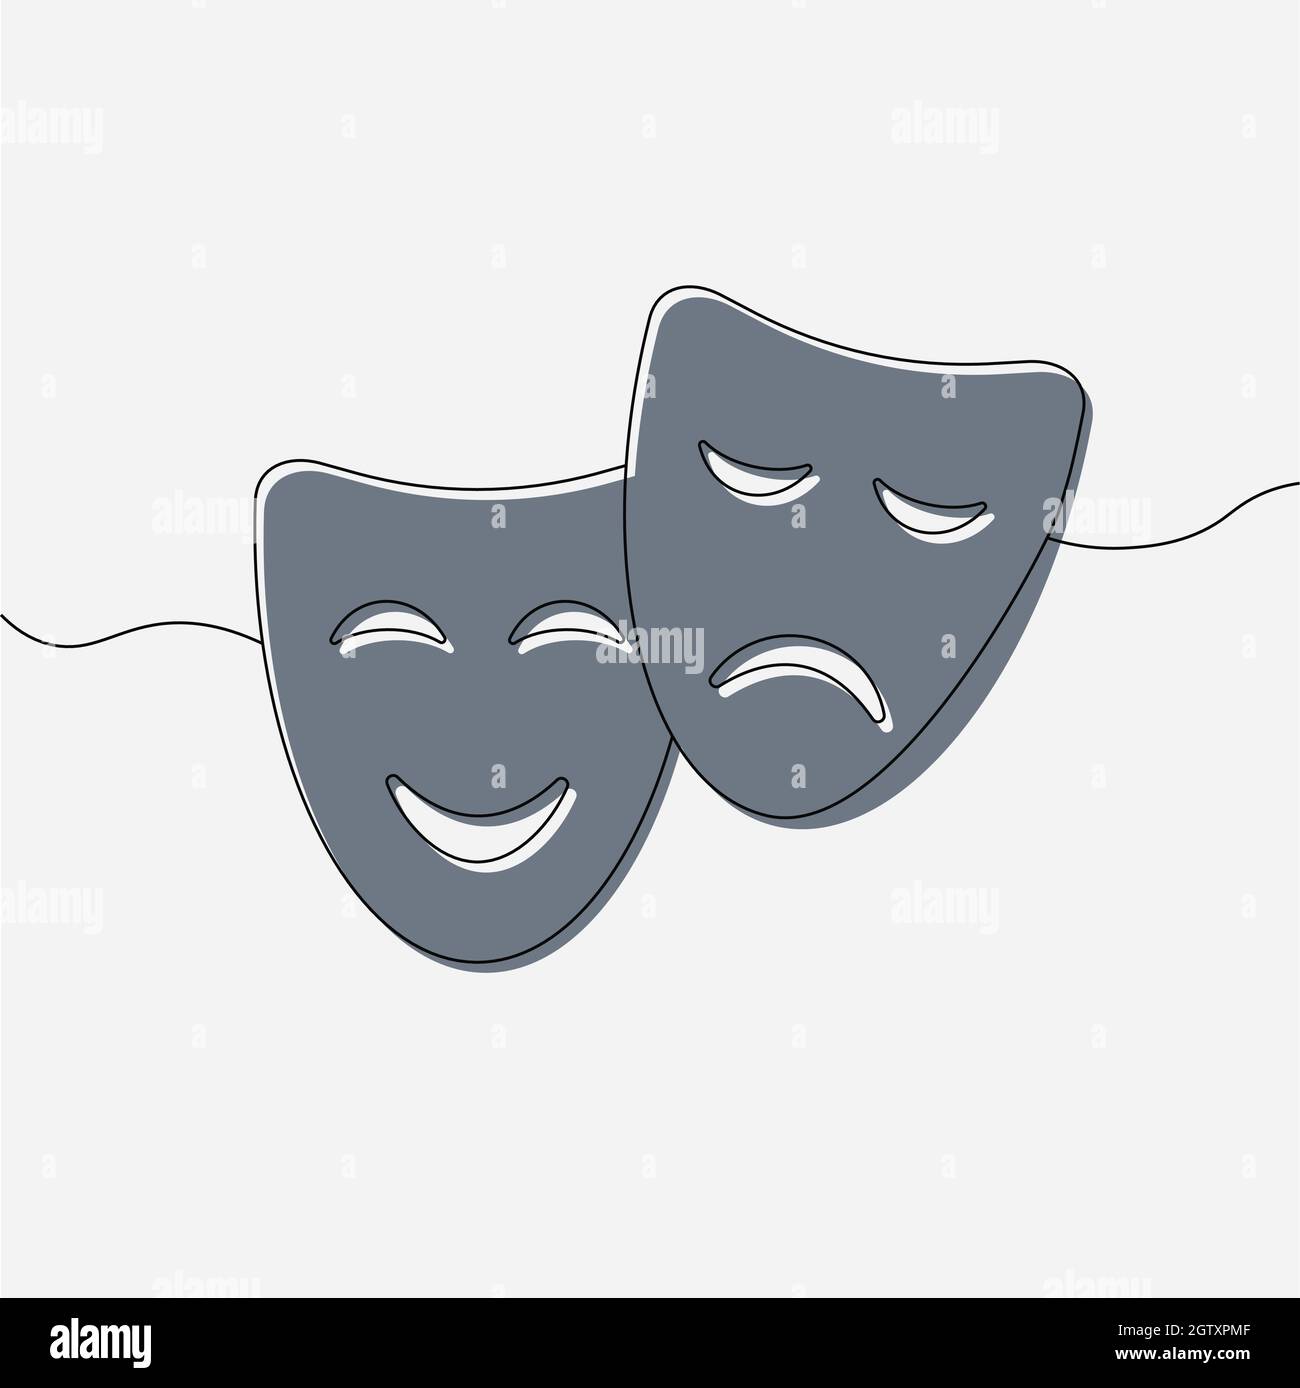 Die glückliche traurige maske Stock-Vektorgrafiken kaufen - Alamy